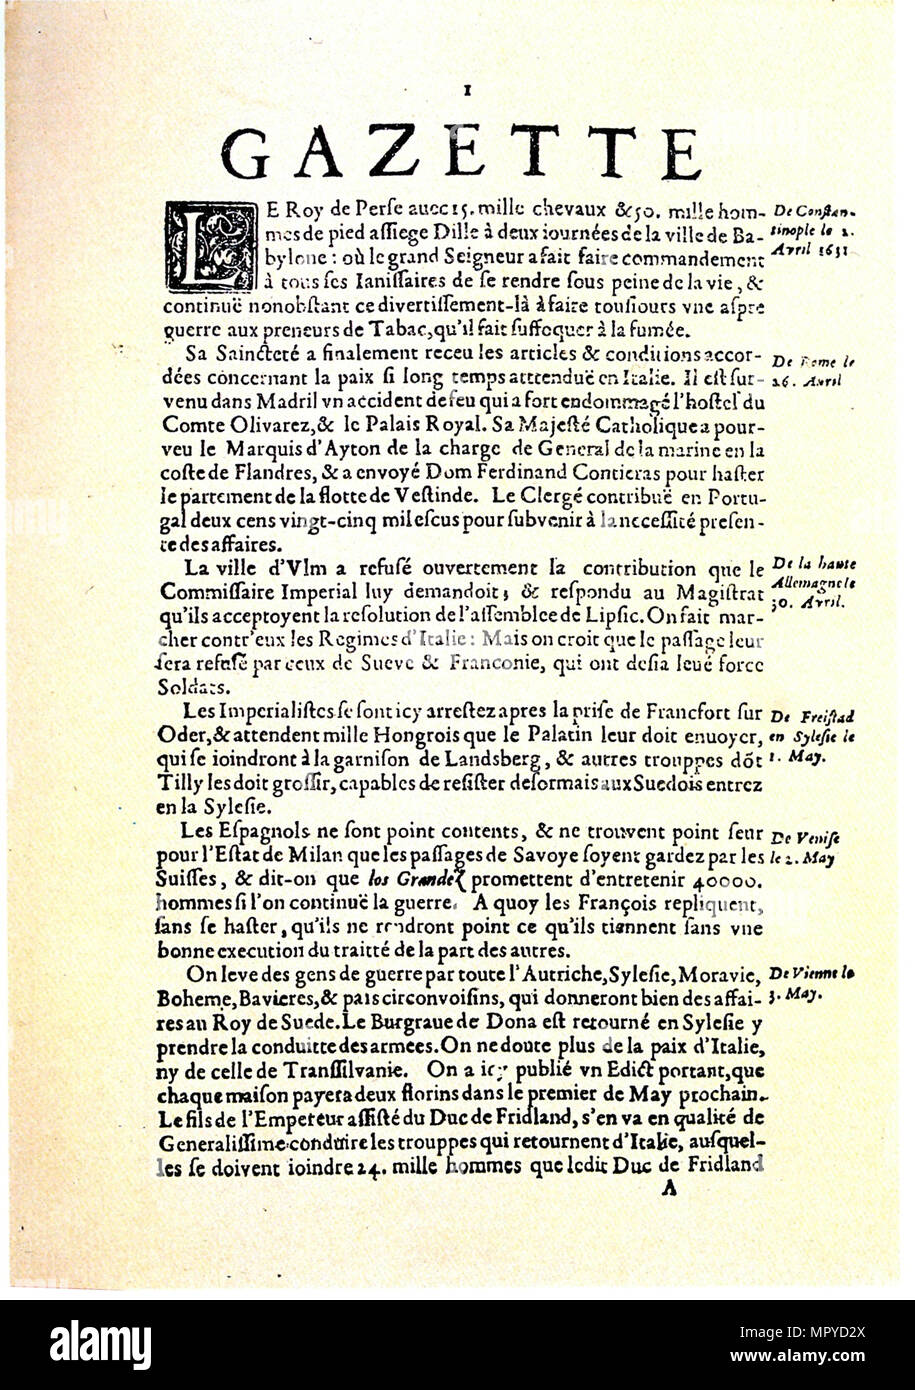 La Gazette (Gazette de France), 1631. Stock Photo